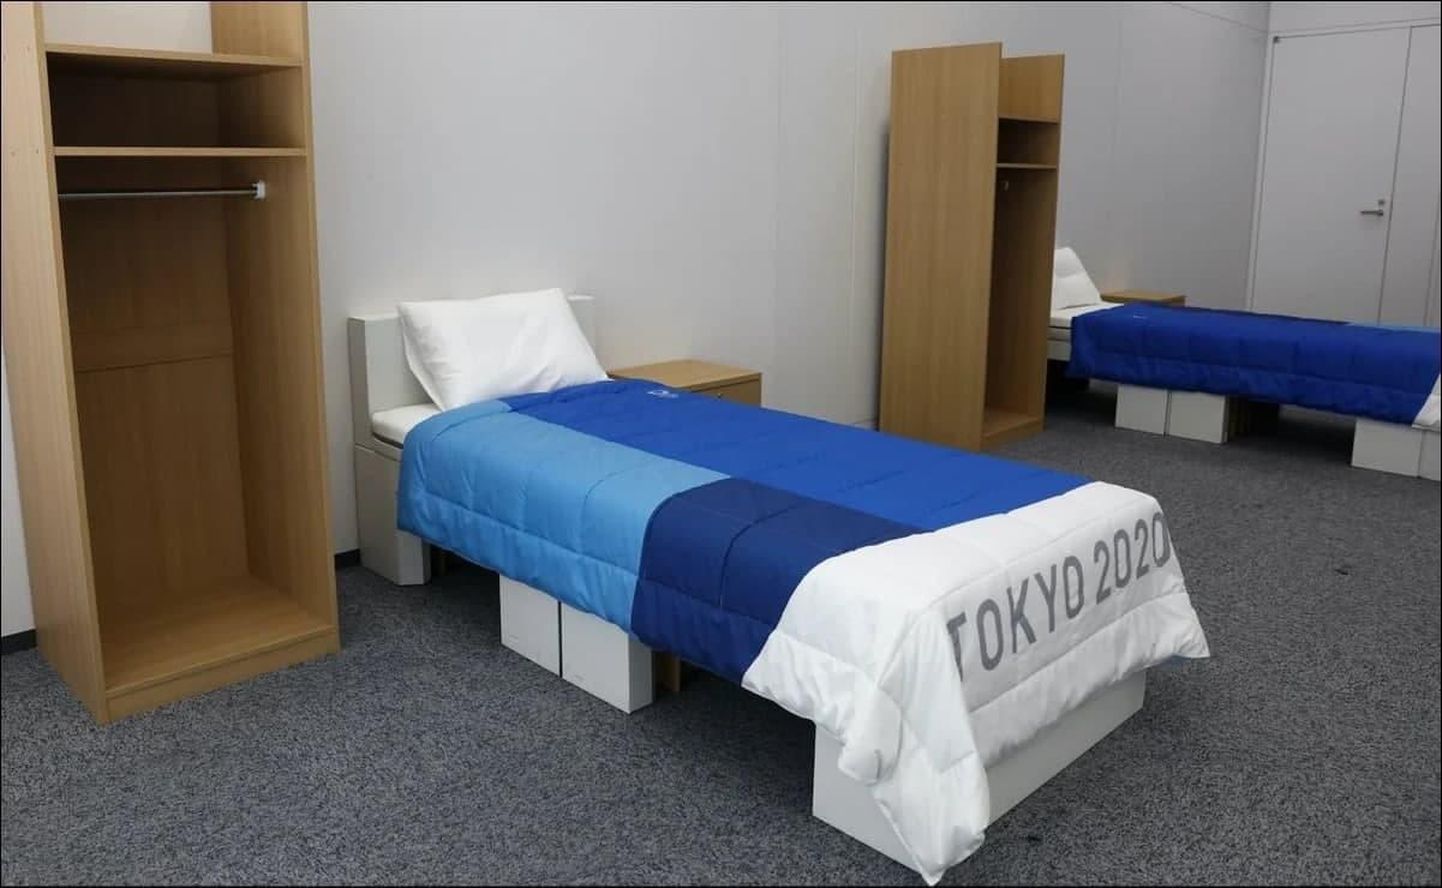 Картонная кровать в Олимпийской деревне.